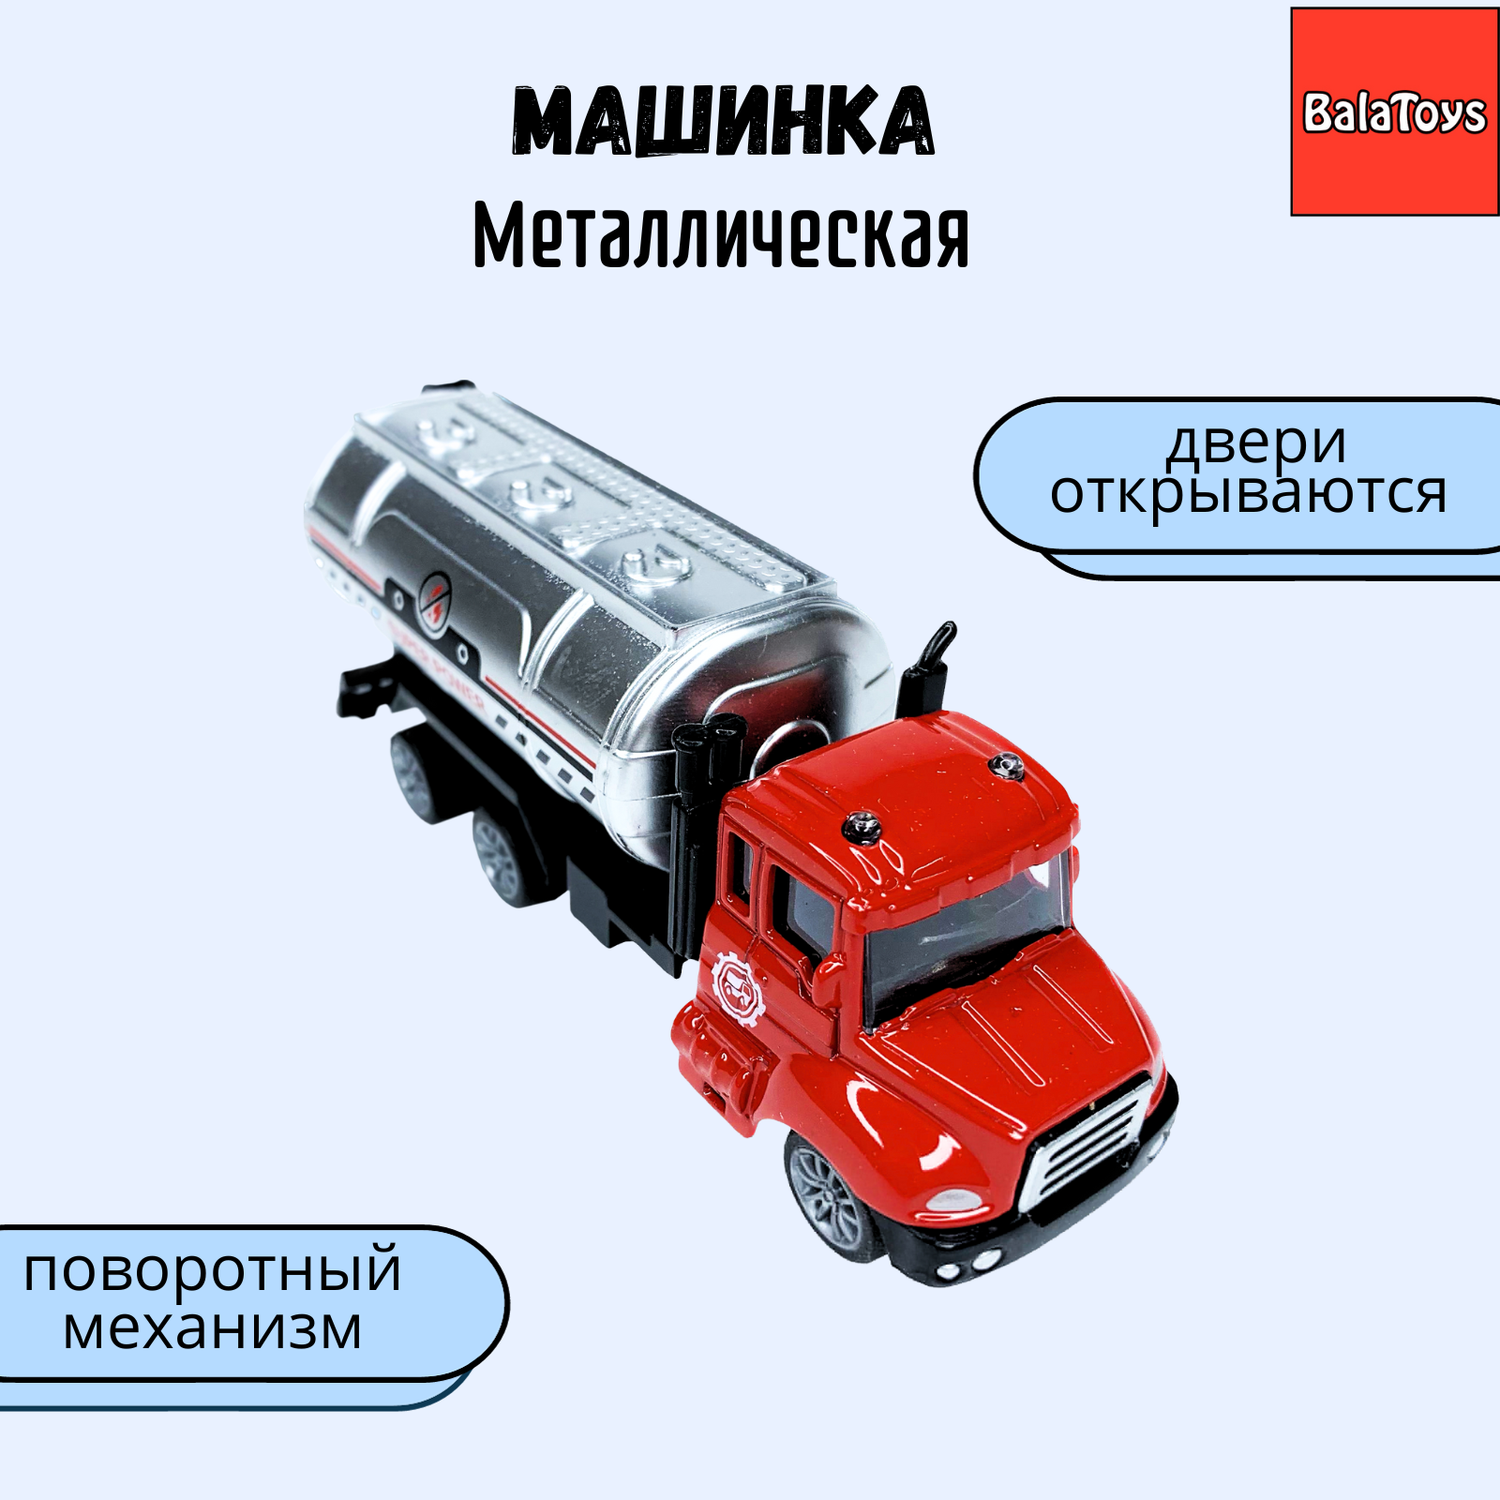 Машинка бензовоз BalaToys с металлической кабиной и поворотными деталями WgtCarFire1 - фото 1